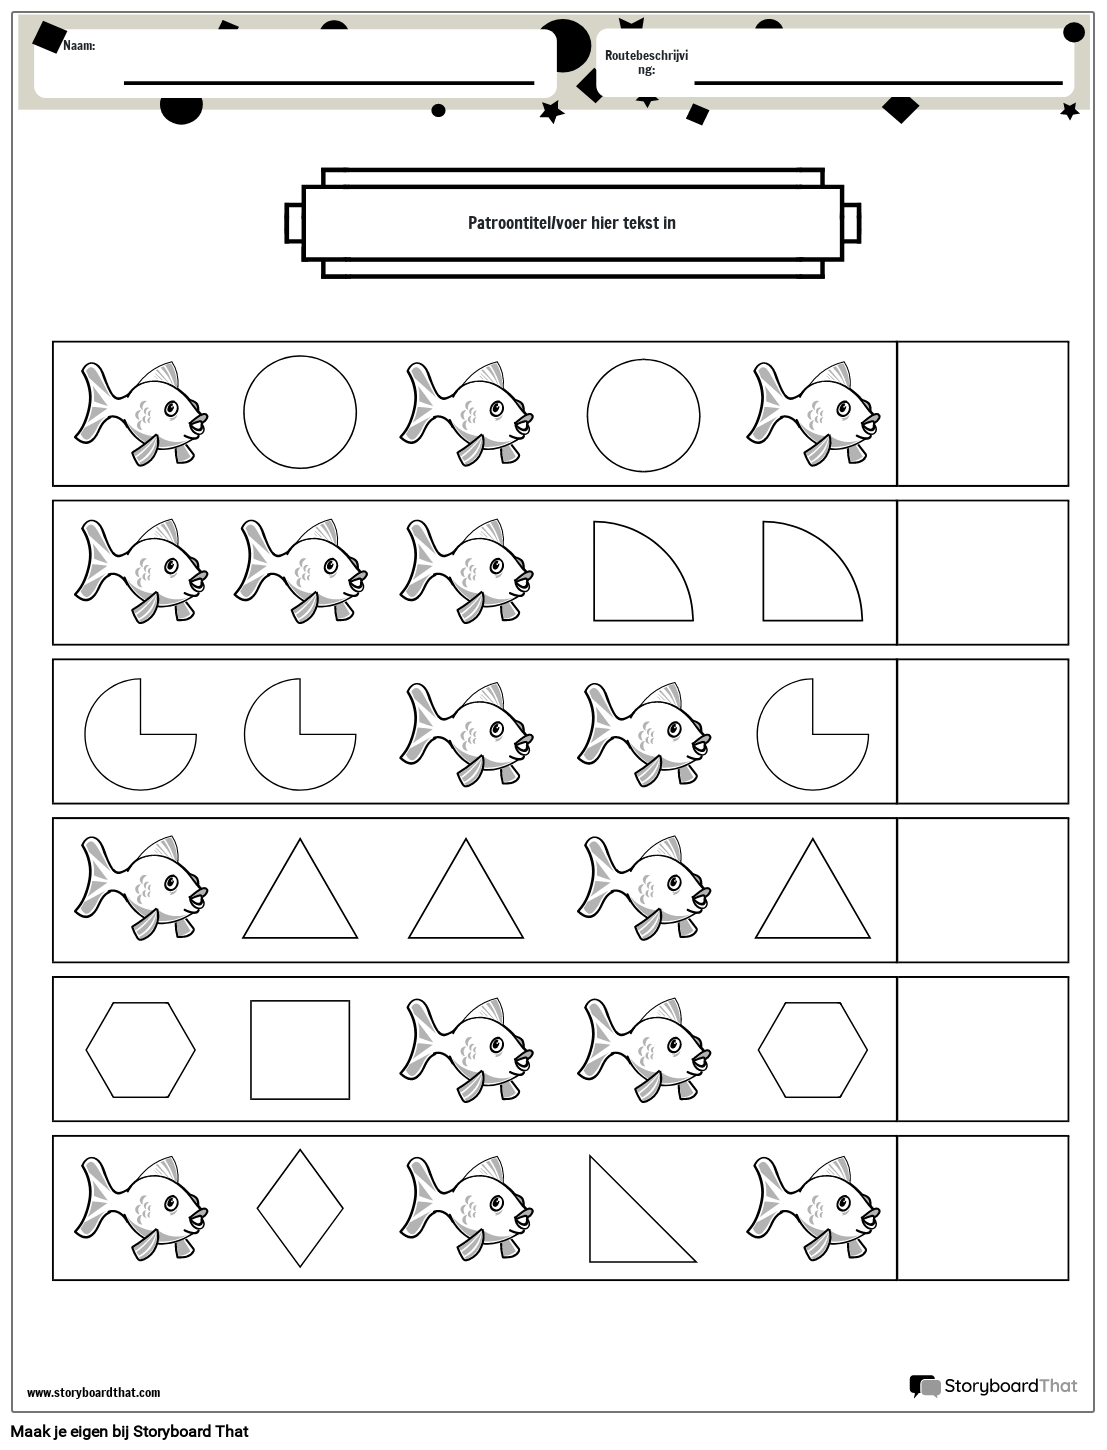 Patroonwerkblad Vissen en vormen (zwart-wit)